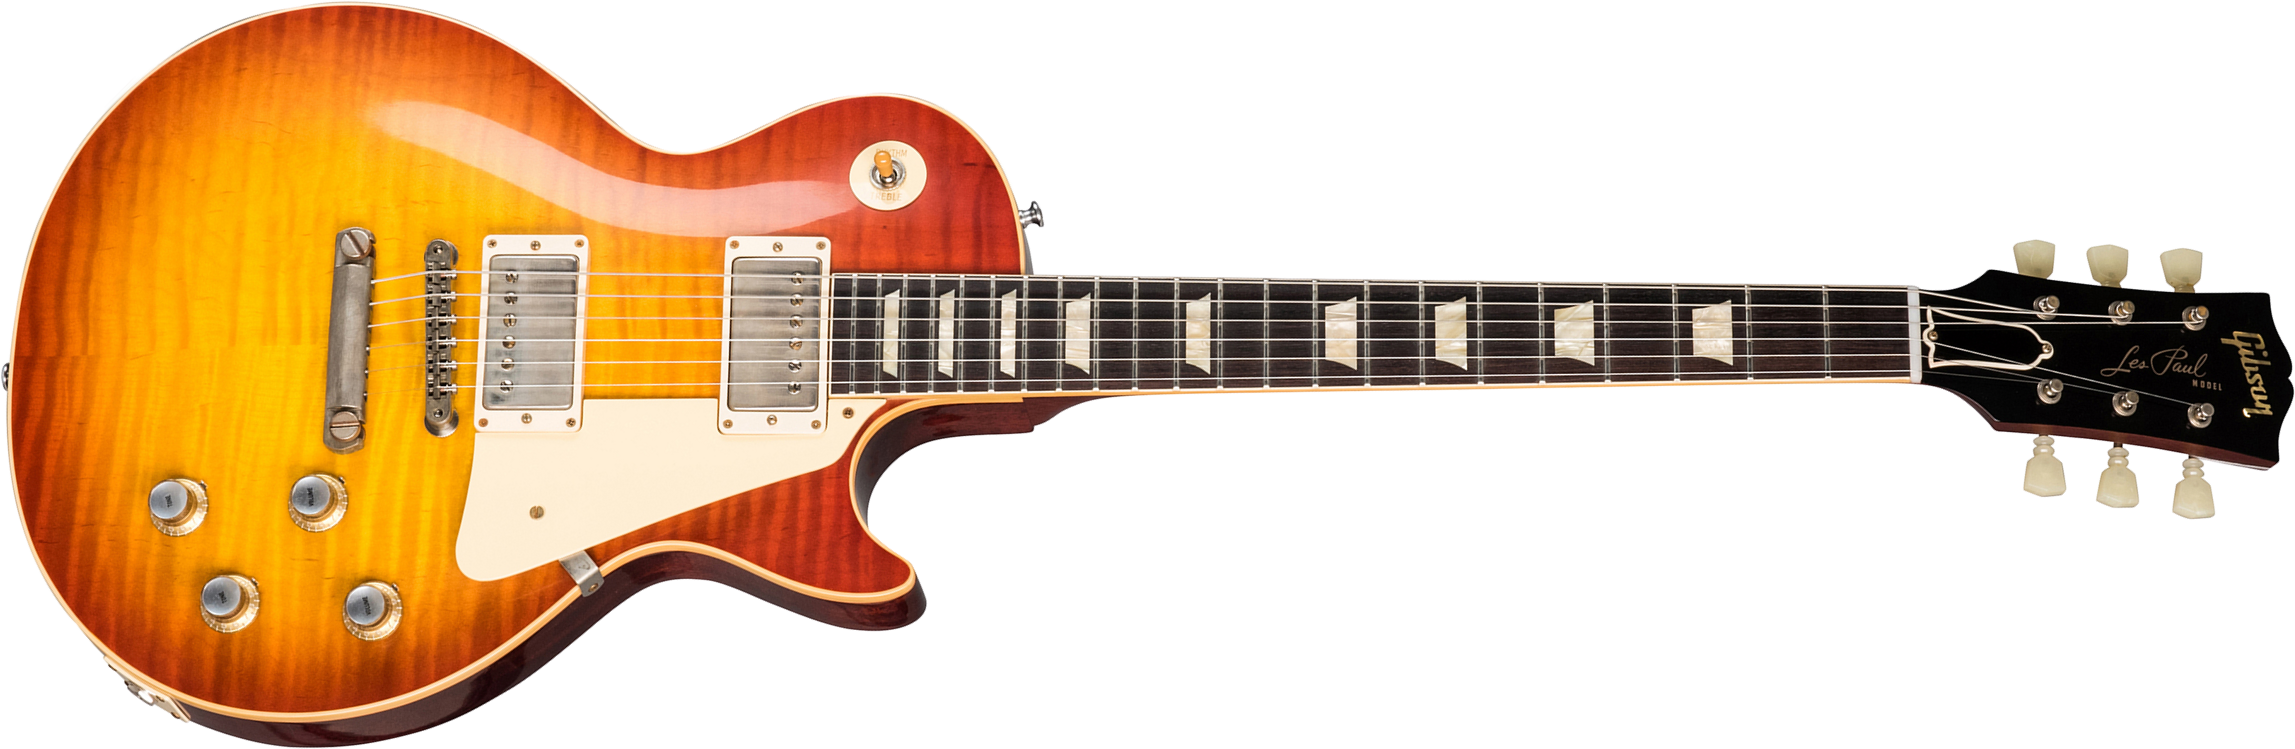 Gibson Custom Shop Les Paul Standard 1960 Reissue 2019 2h Ht Rw - Vos Washed Cherry Sunburst - Guitarra eléctrica de corte único. - Main picture